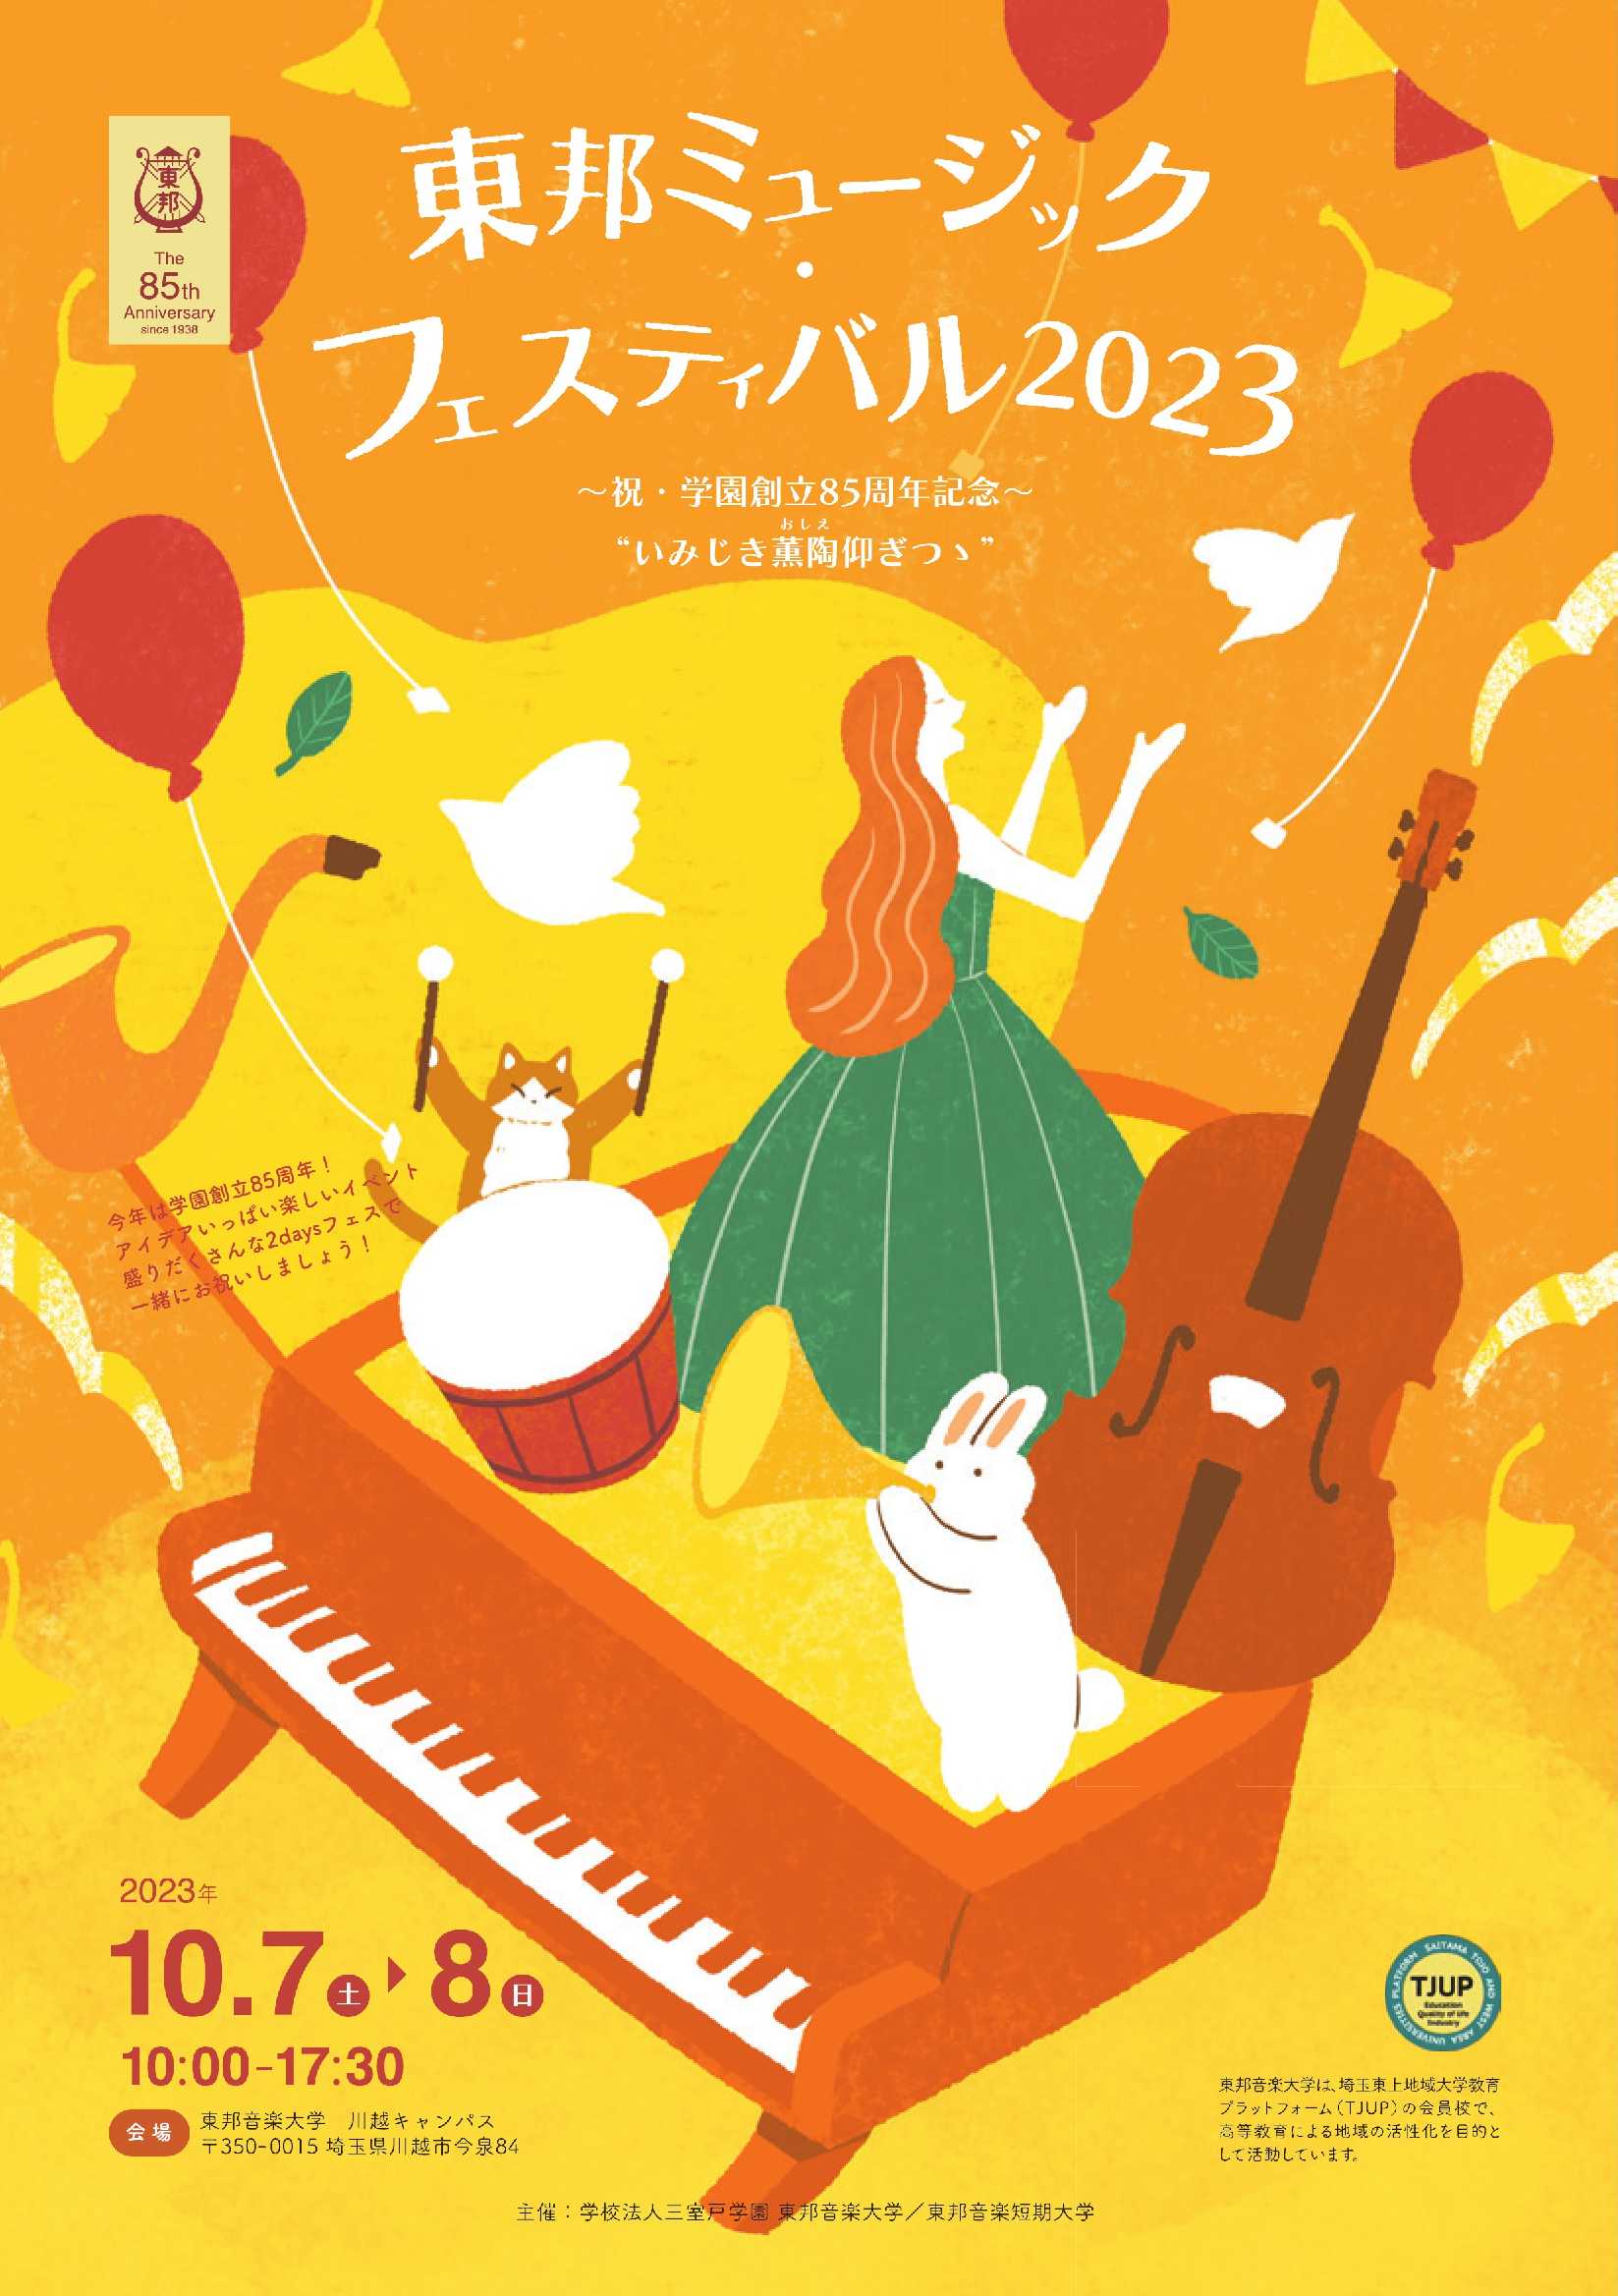 「東邦ミュージック・フェスティバル2023」の情報を公開いたしました。